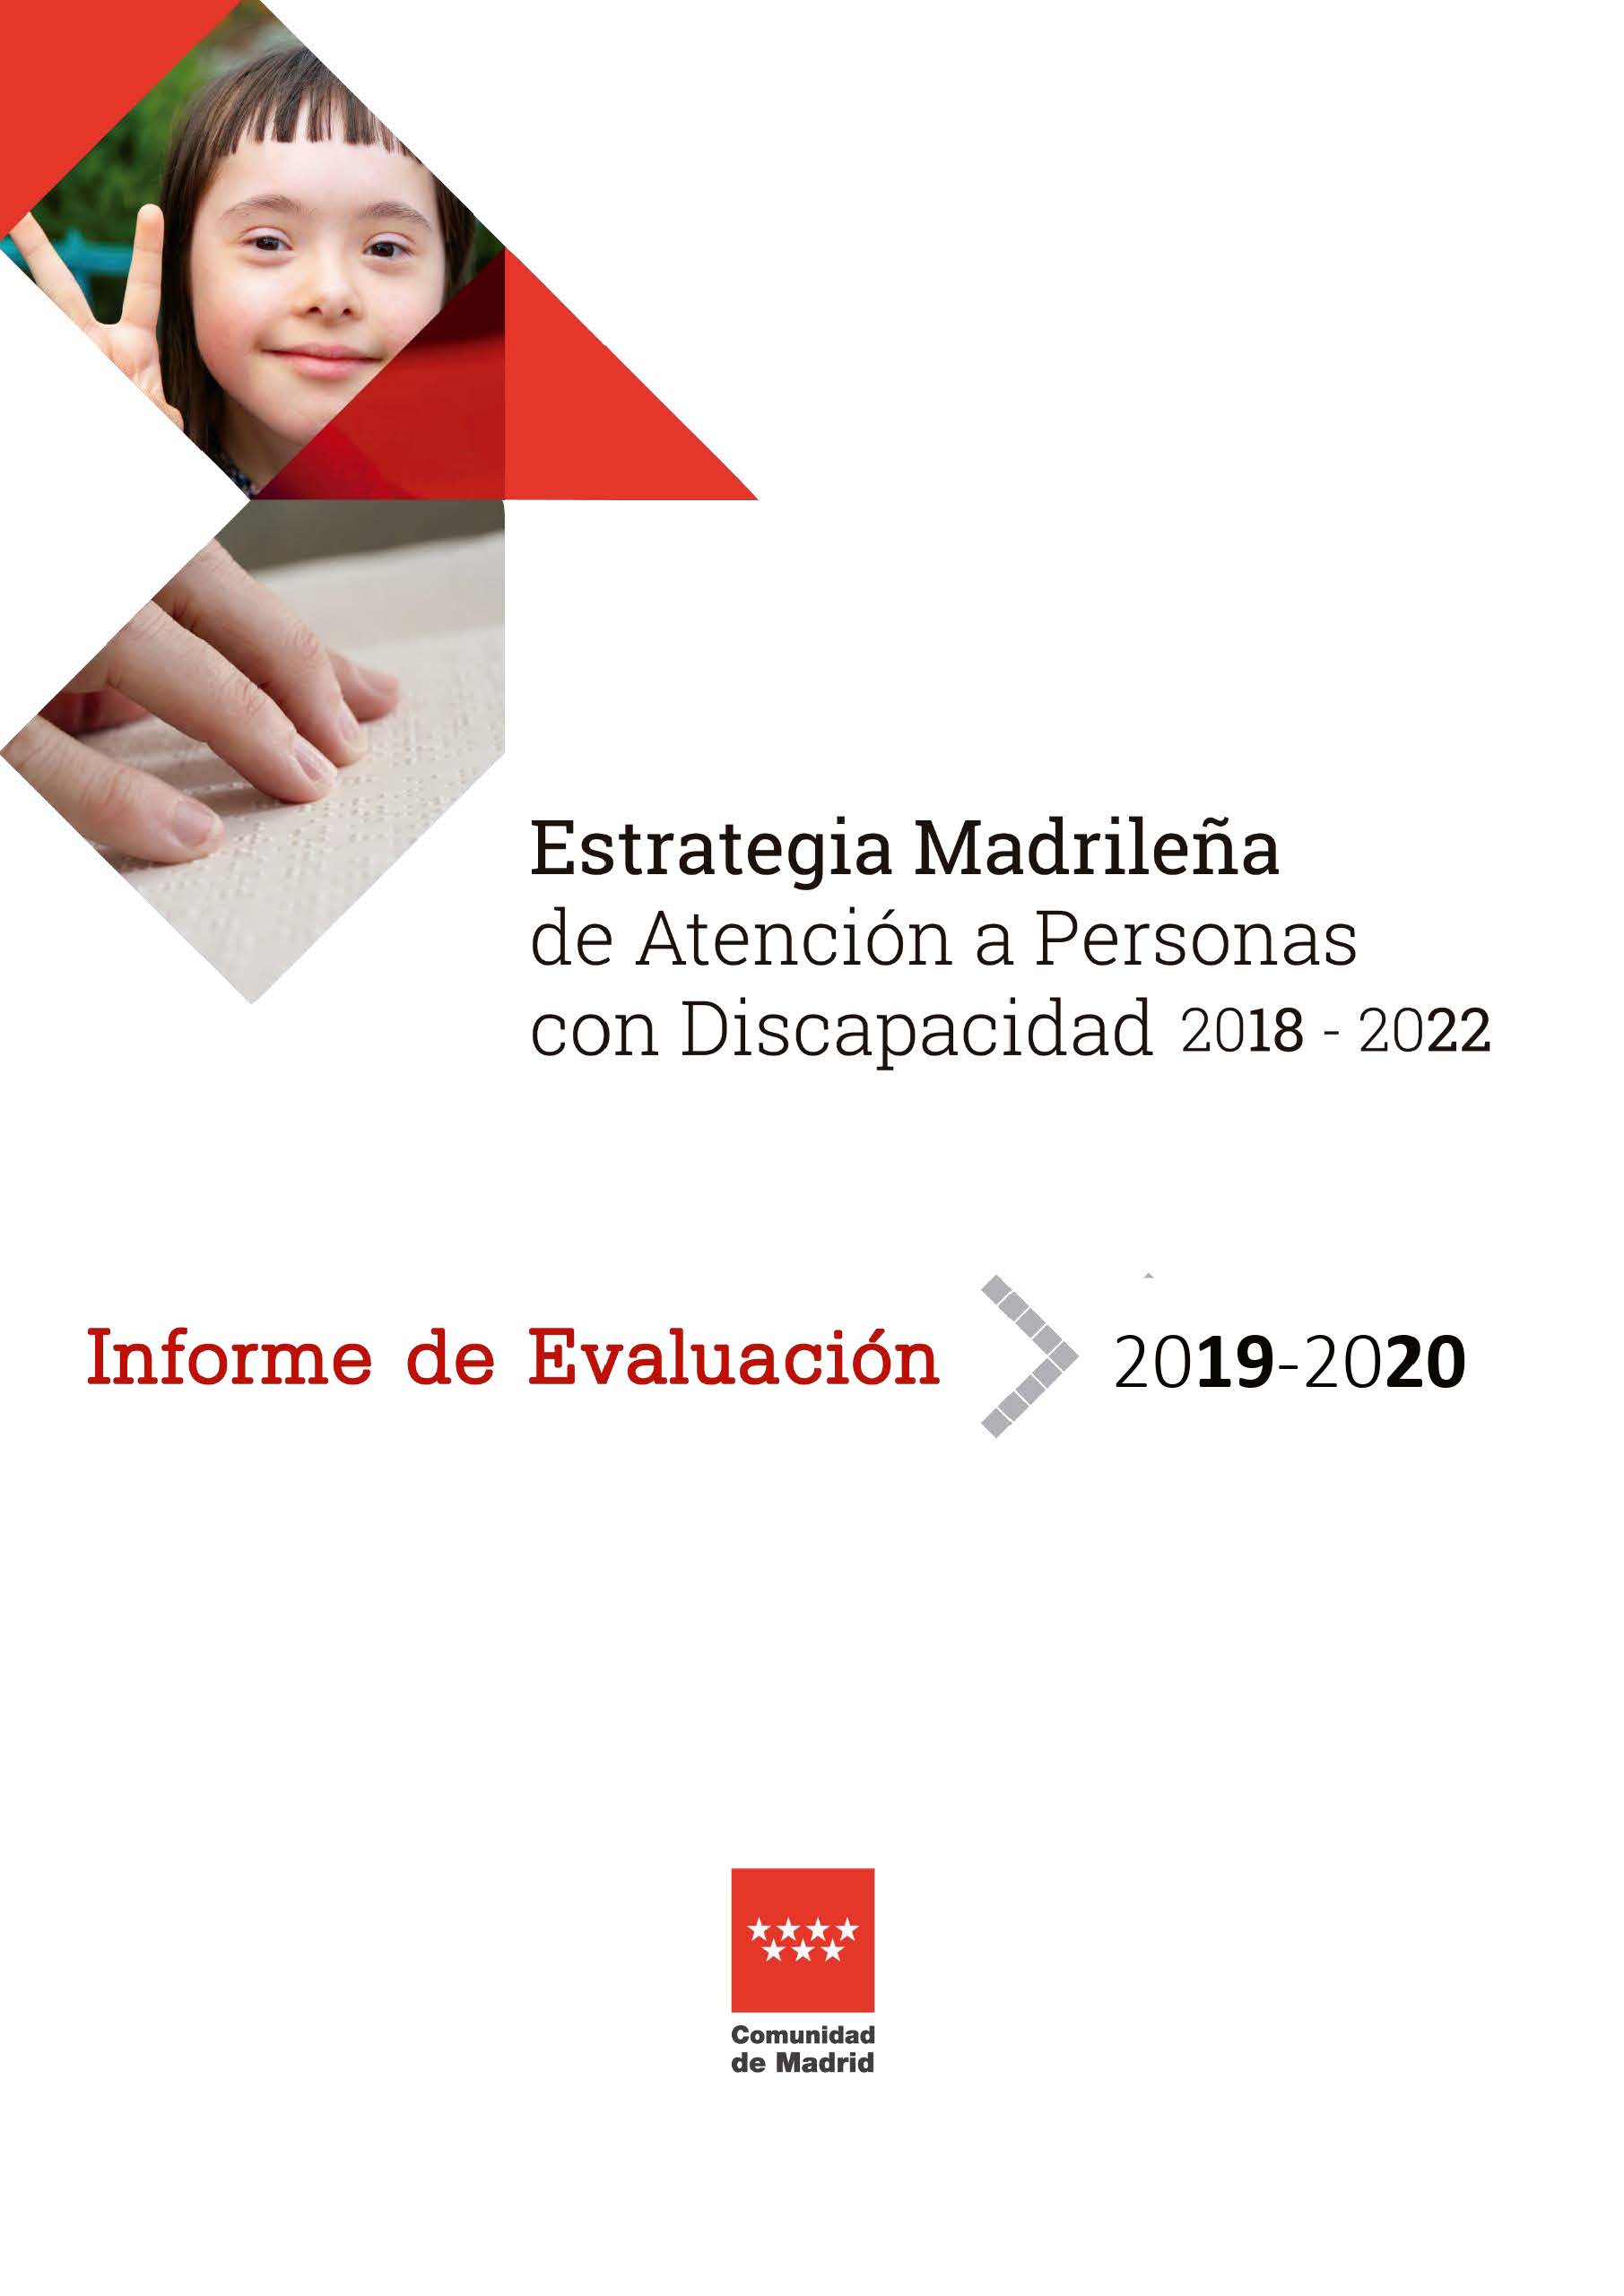 Portada de Informe de evaluación 2019- 2020. Estrategia madrileña de atención a personas con discapacidad 2018-2022